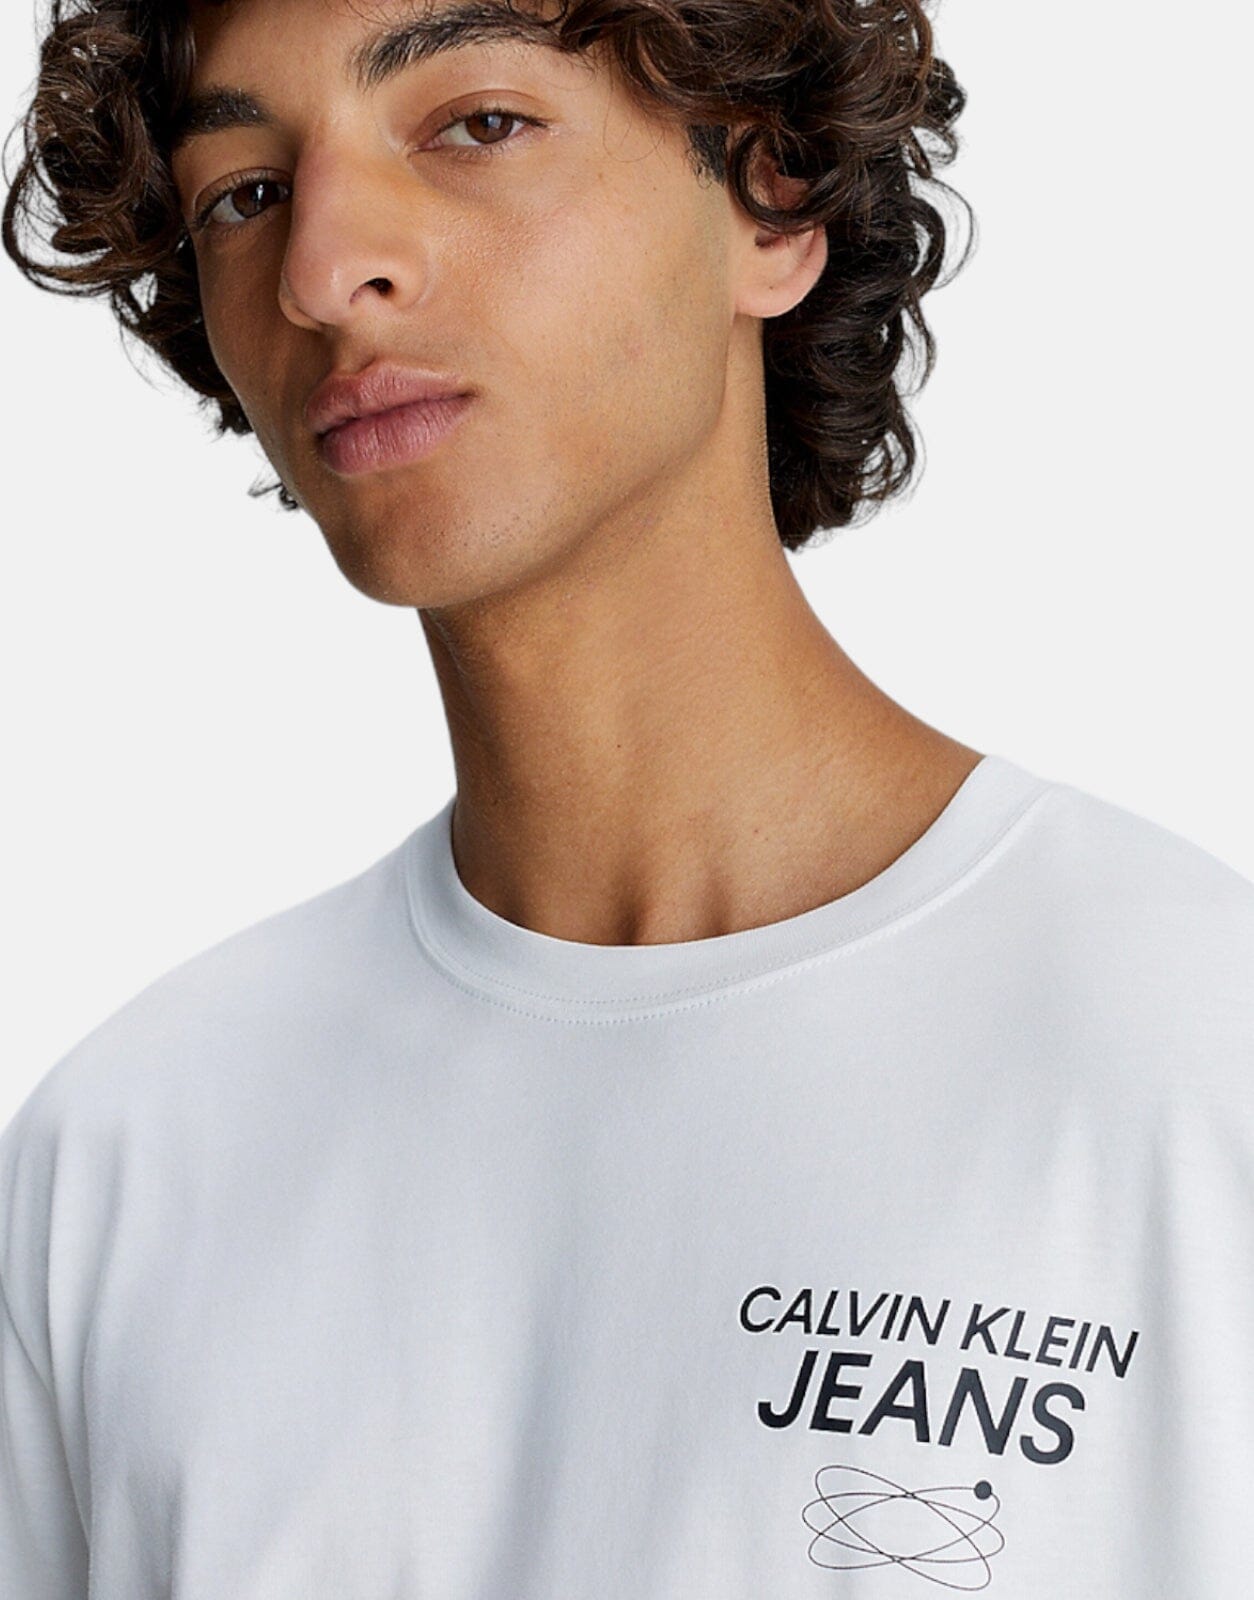 Calvin Klein Future Galaxy Graphic White T-Shirt - Subwear